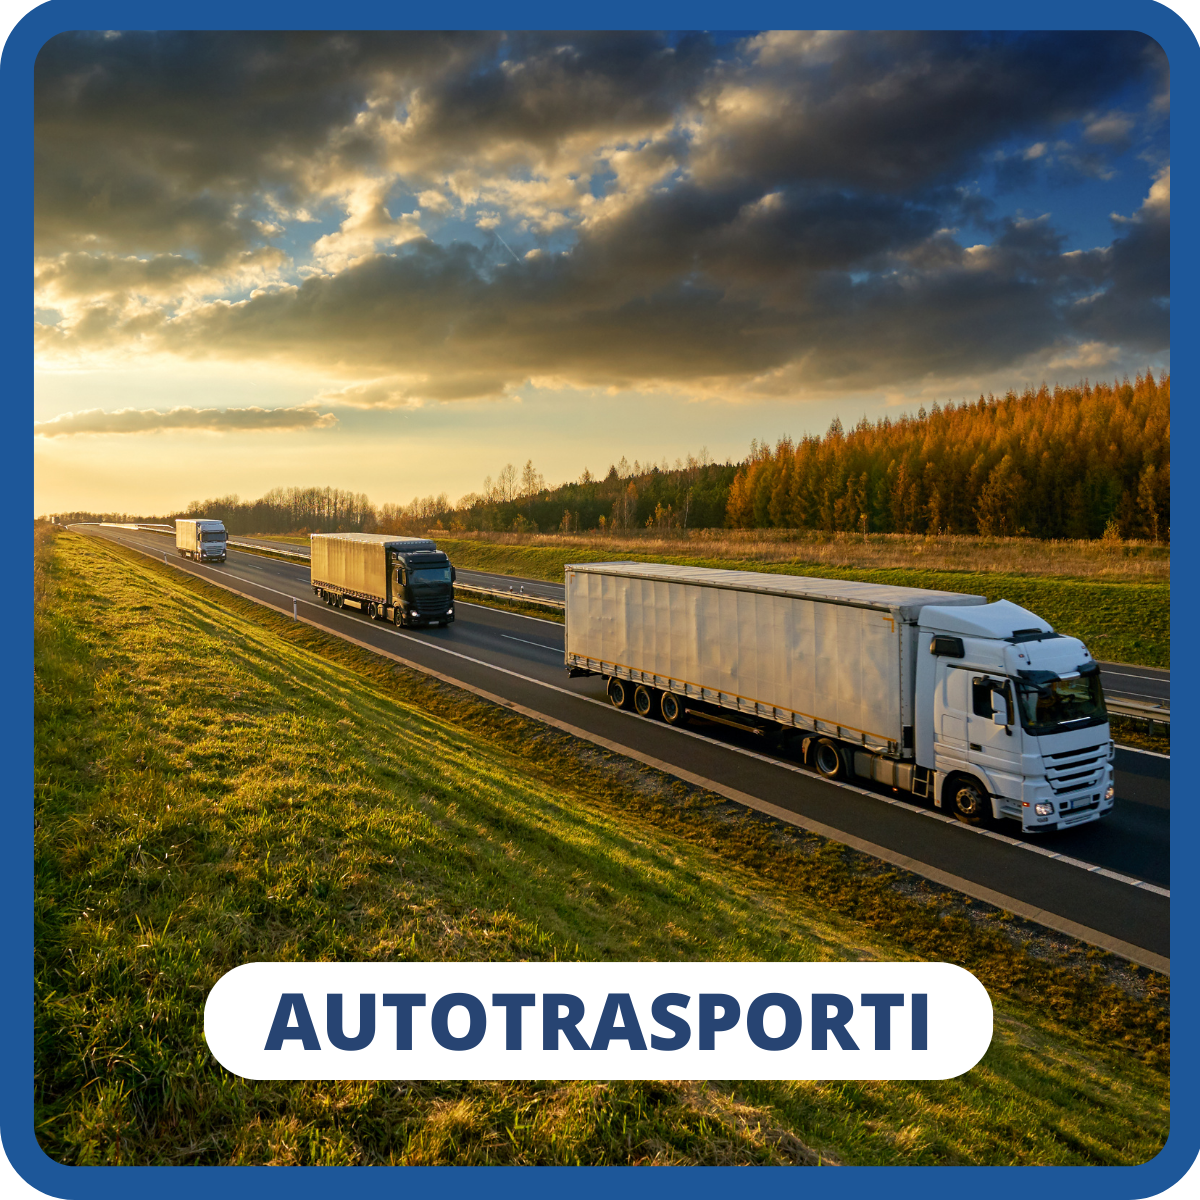 Autotrasporti incentivi veicoli ecologici detrazioni deduzioni CCNL logistica spedizioni trasporti bonus gasolio